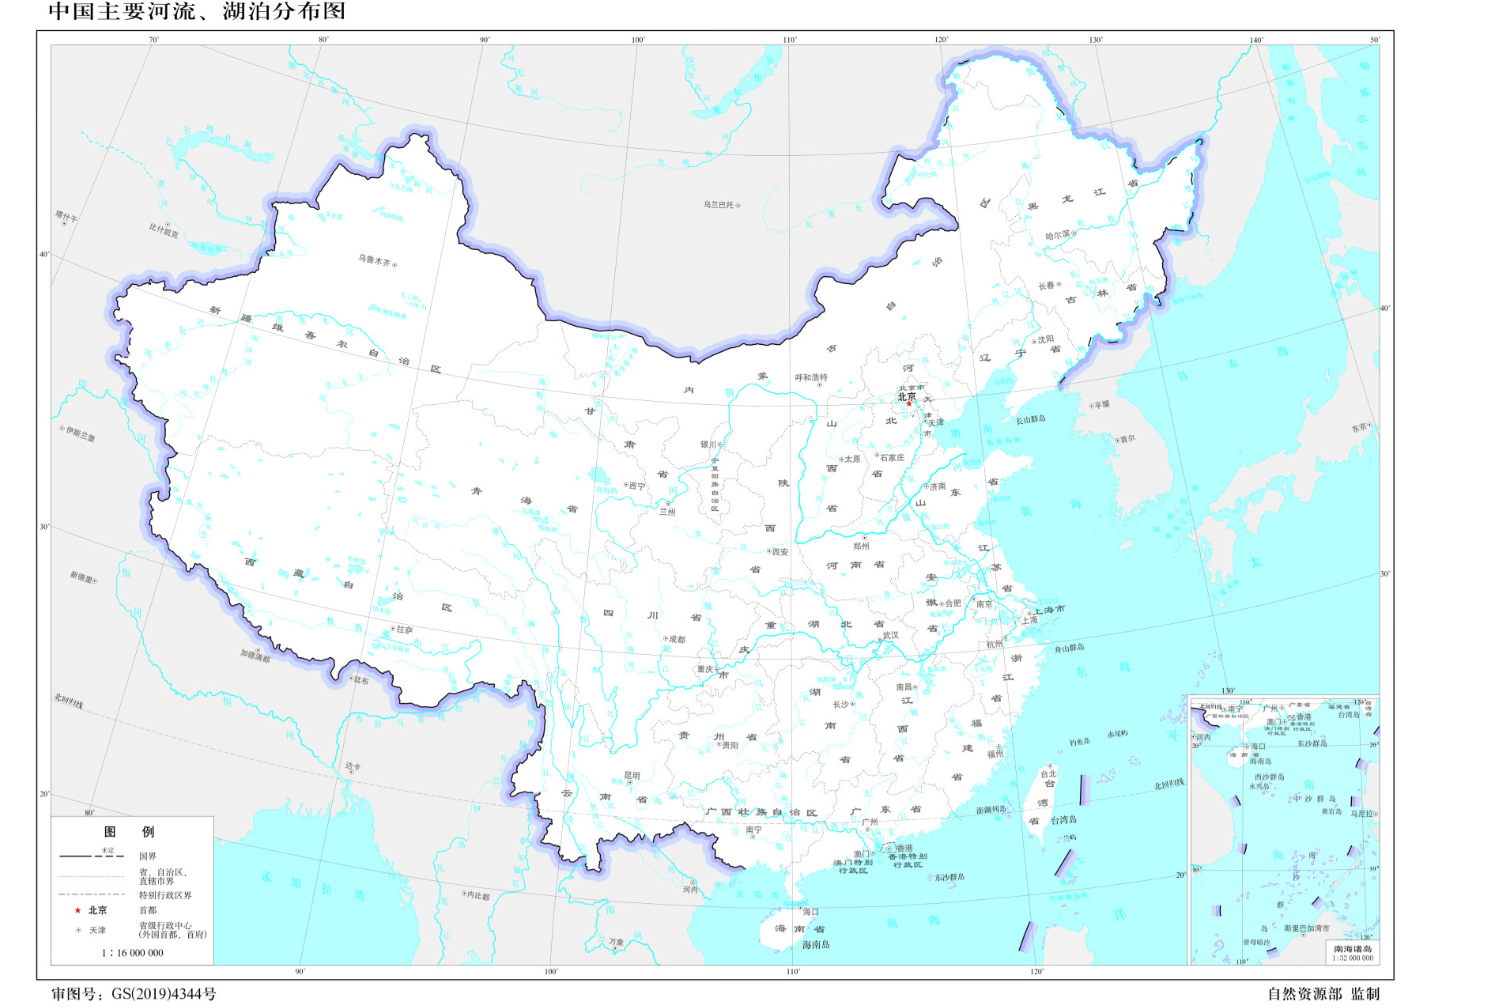 世界地图，中国地图，中国各种地势图[高清无水印版,jpg,100MB]阿里云网盘下载